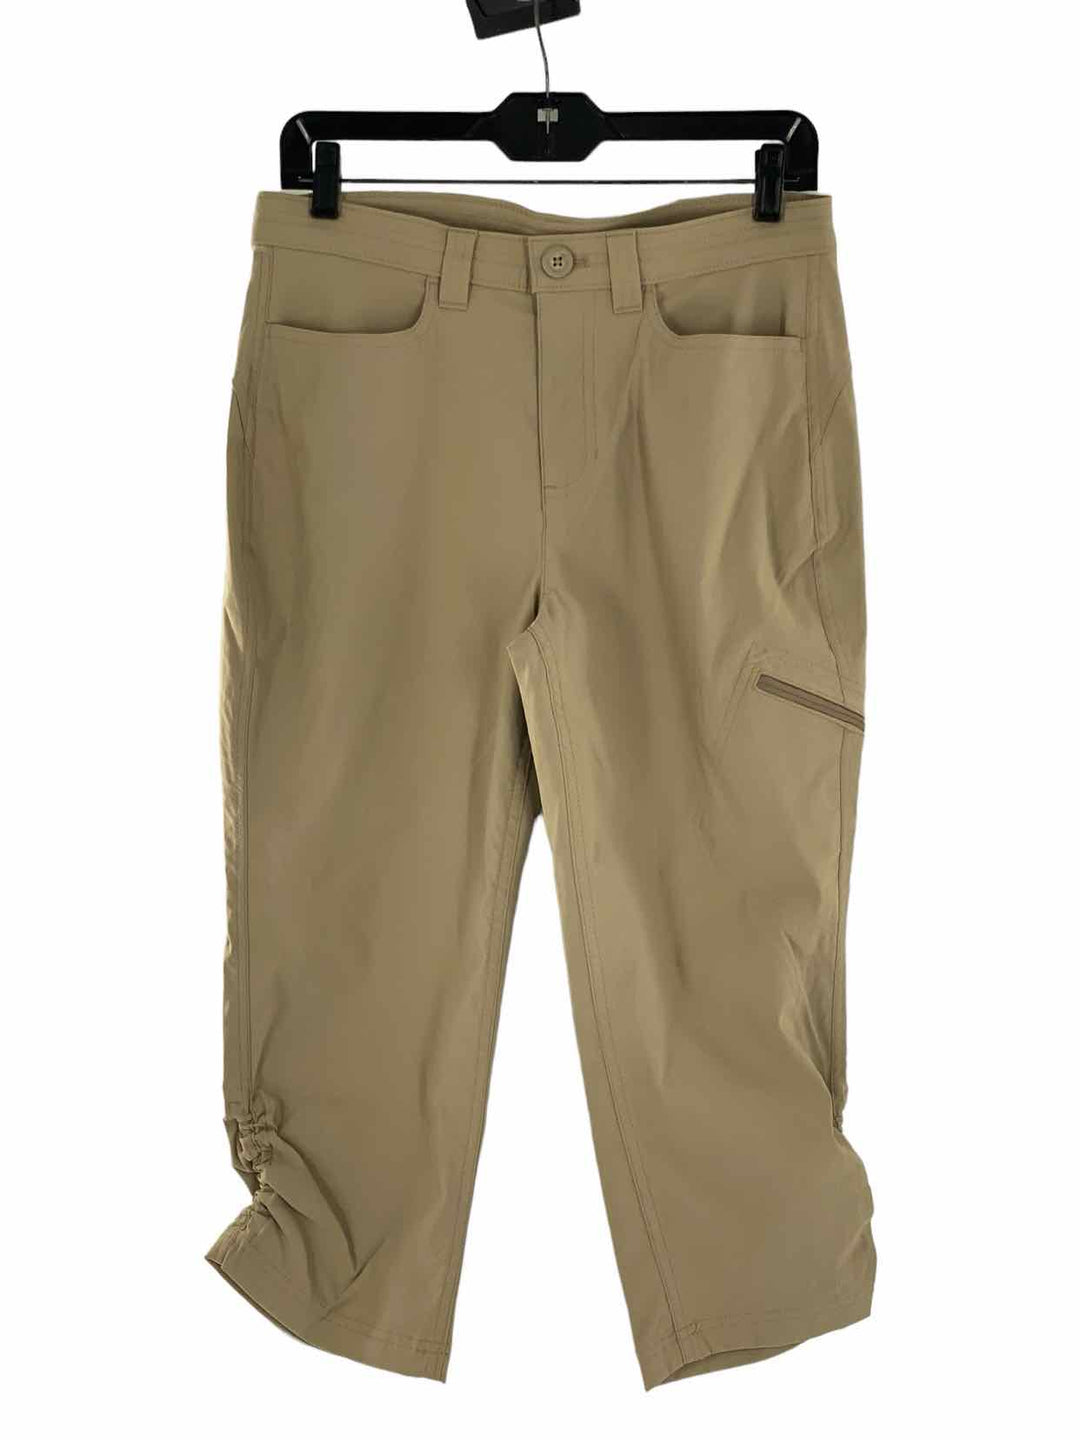 Eddie Bauer Size 8 Tan NWT Pants